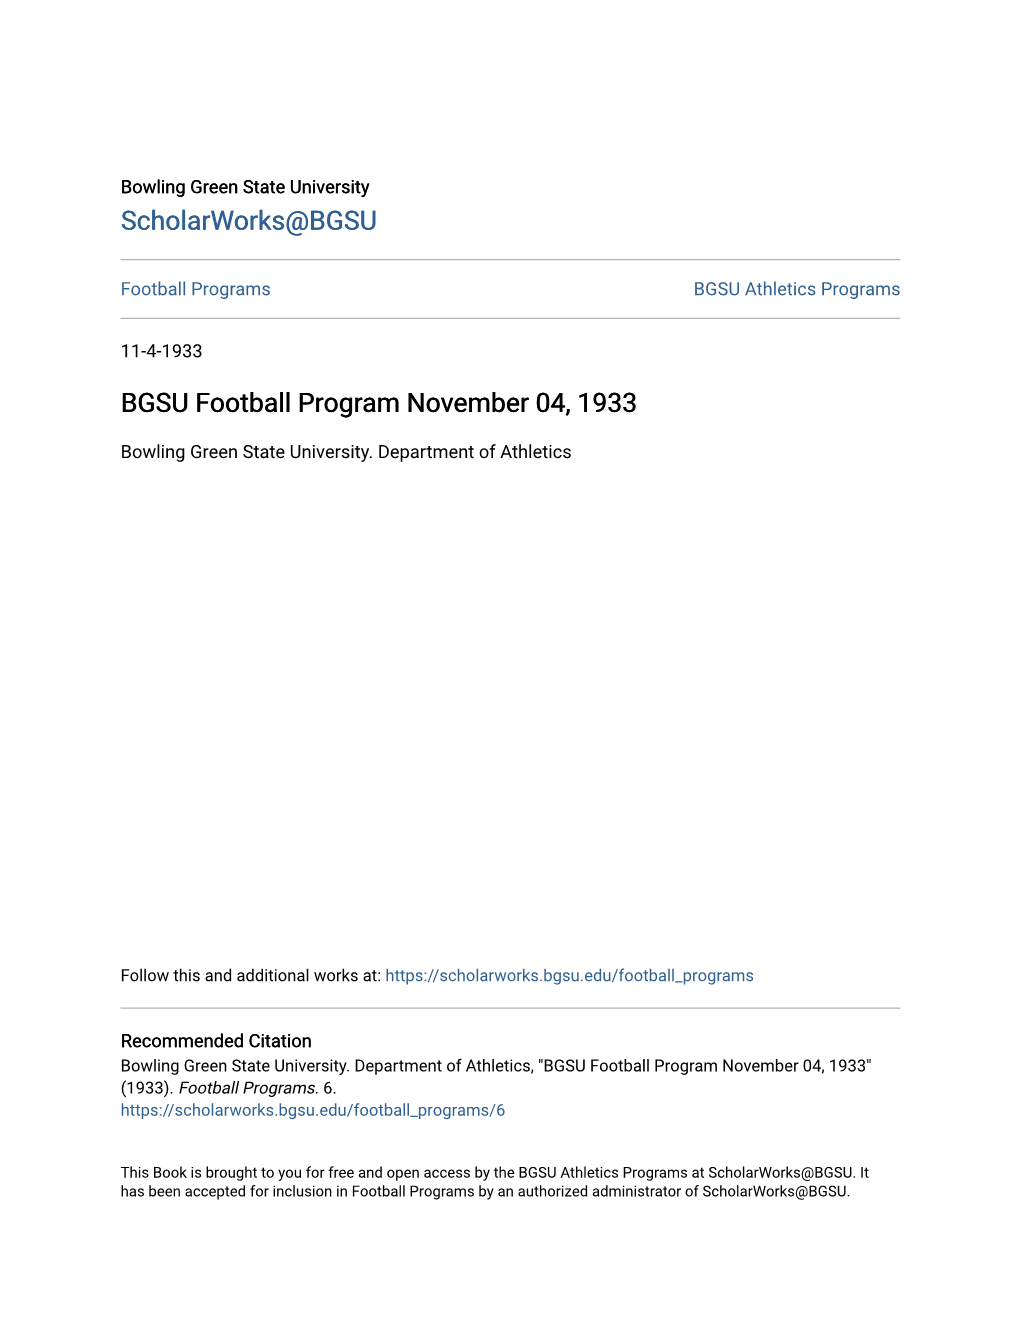 BGSU Football Program November 04, 1933